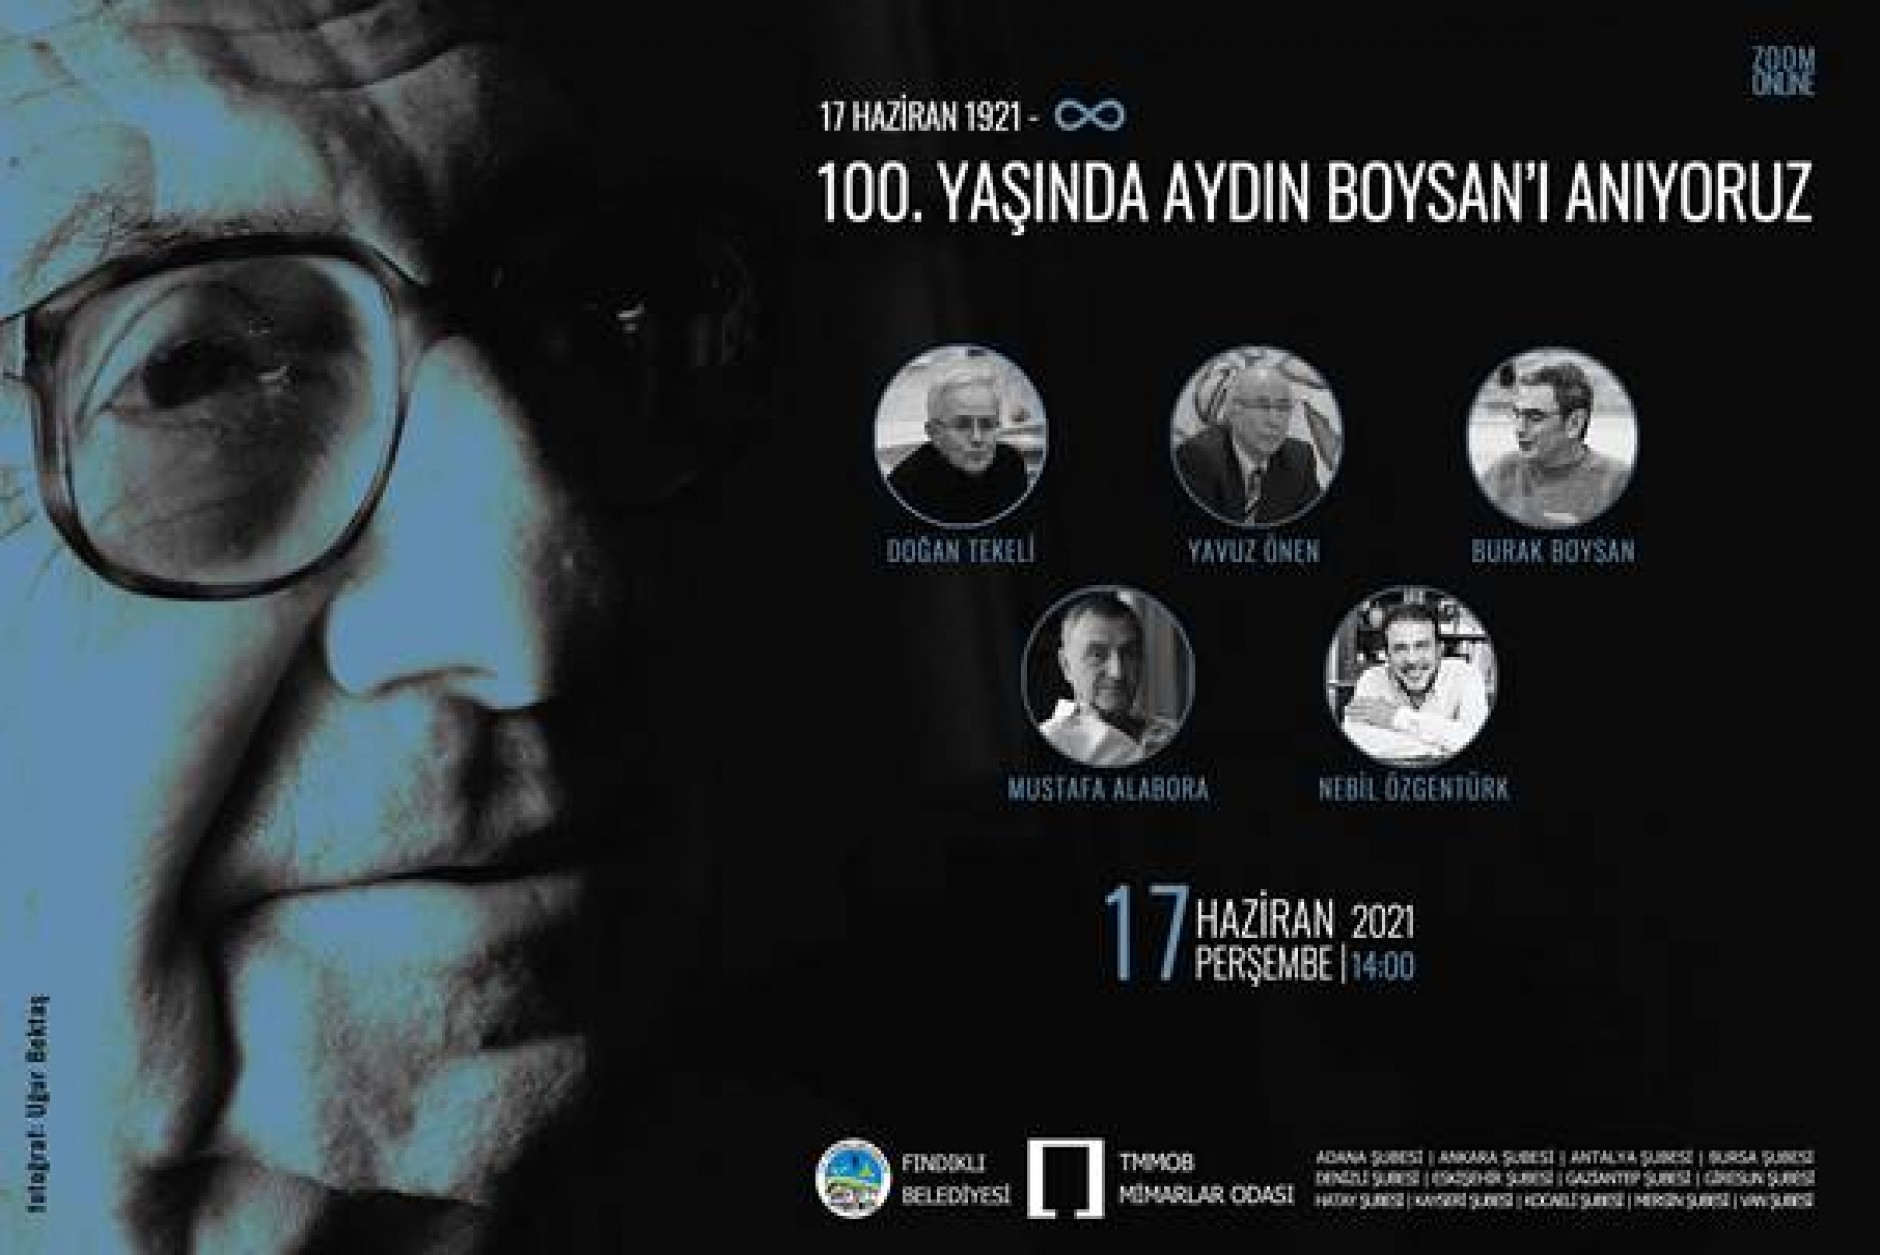 "Aydın Boysan 100.Yaşında" anma programı hk